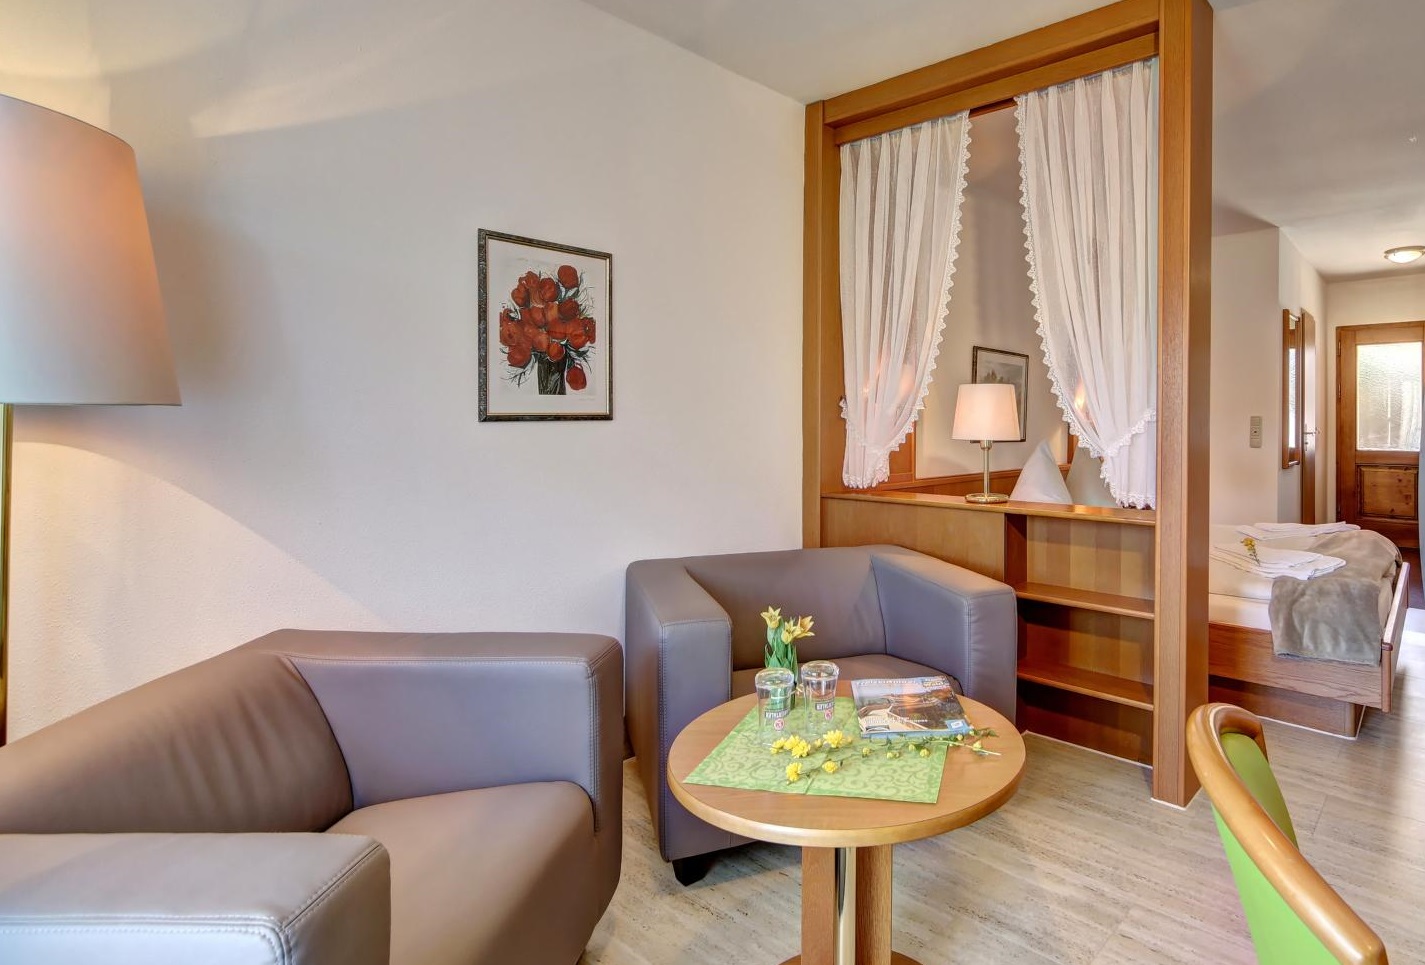 Blick auf die Sitzecke in einem Zimmer. Neben einem runden Holztisch stehen zwei rechteckige Sessel mit Lederbezug. Rechts im Bild sieht man hinter dem Raumteiler das Doppelbett und die Eingangstür. An der Wand hängt ein Bild von einem Blumenstrauß.